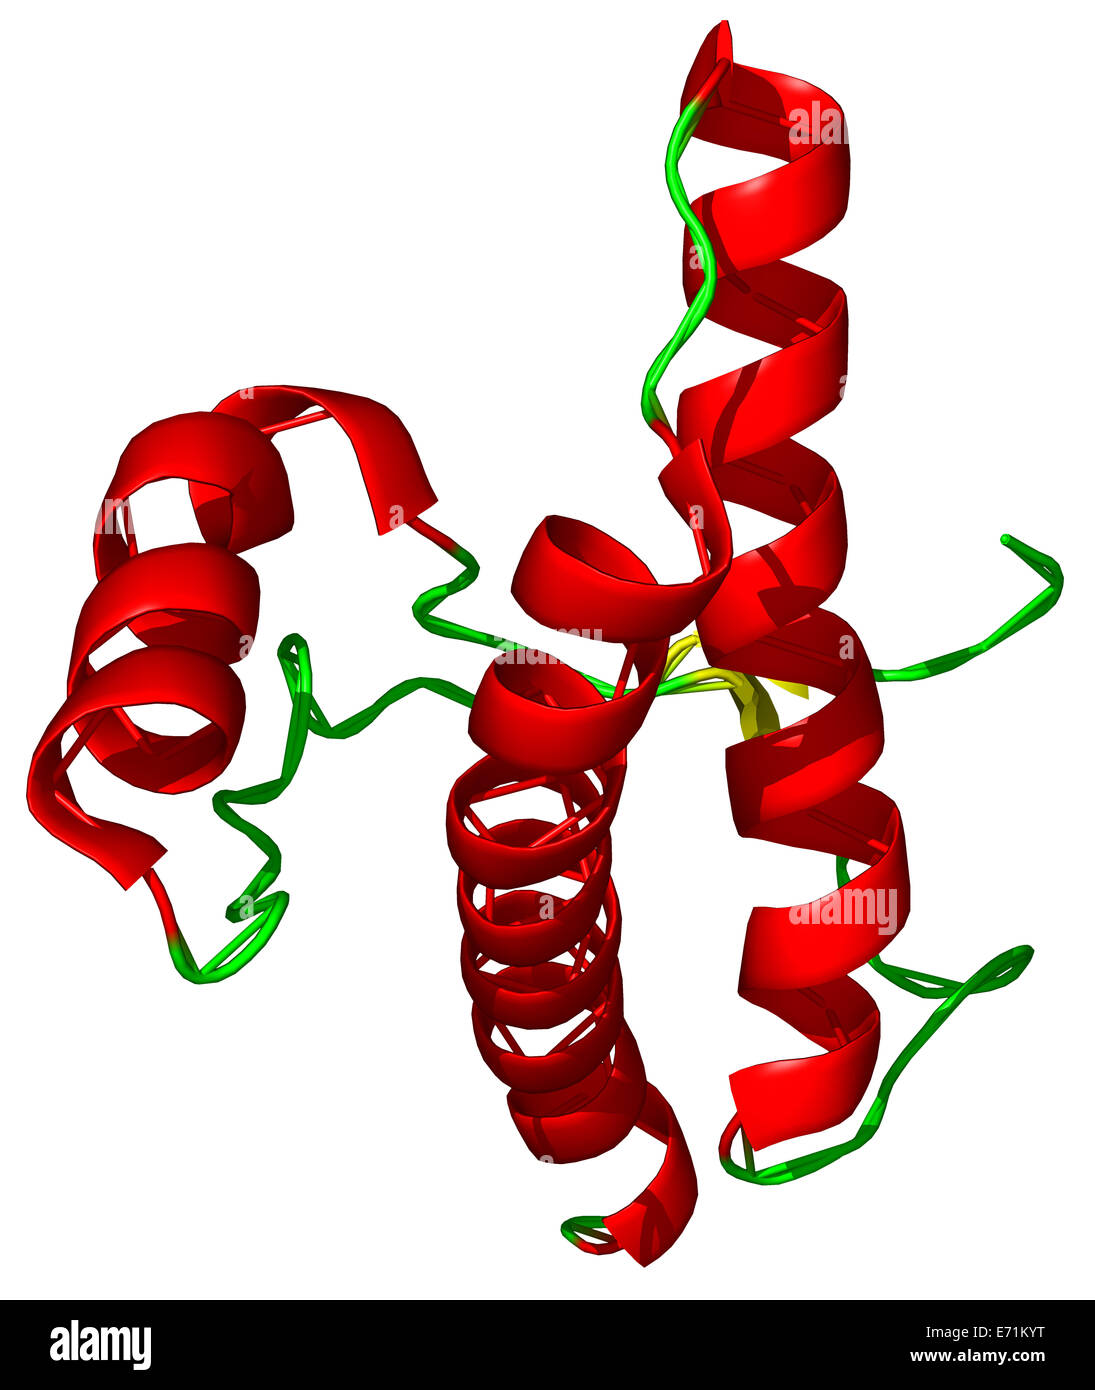 La protéine prion (PrP) est une glycoprotéine de surface cellulaire. Naturellement les maladies à prions ocuring : maladie de Creutzfeldt-Jakob Banque D'Images